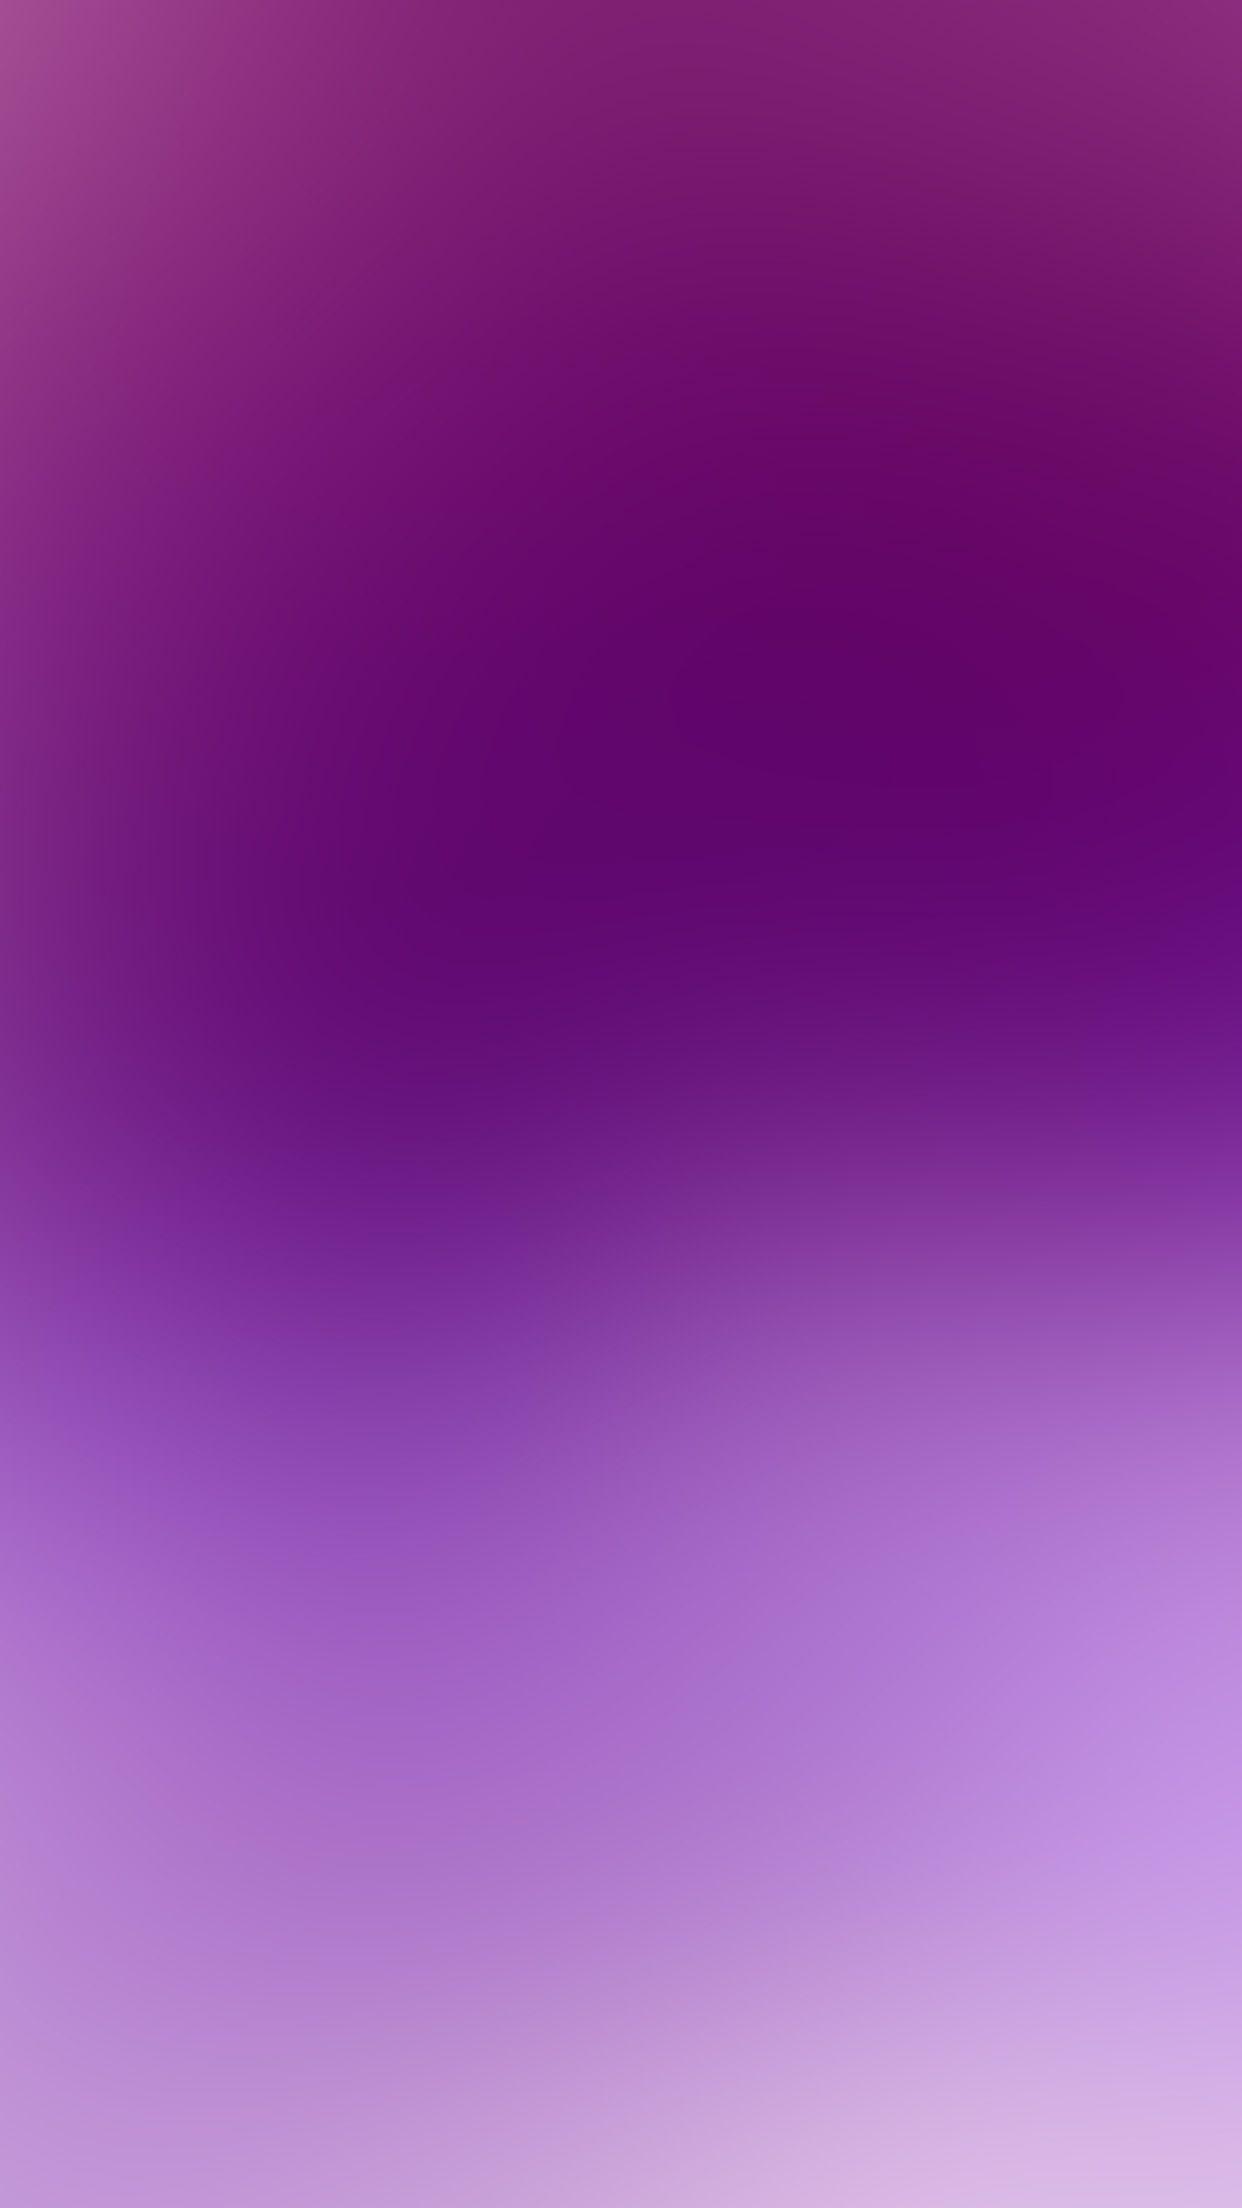 1242x2208 Nền đồng bằng màu tím thẩm mỹ